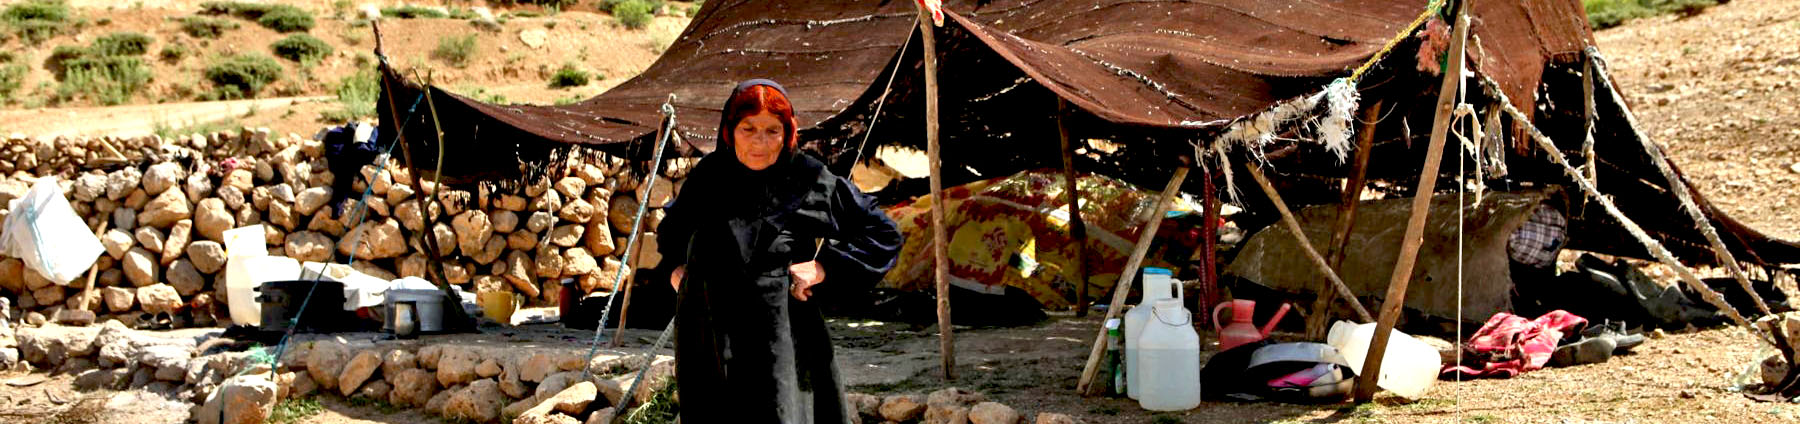 nómadas de Irán